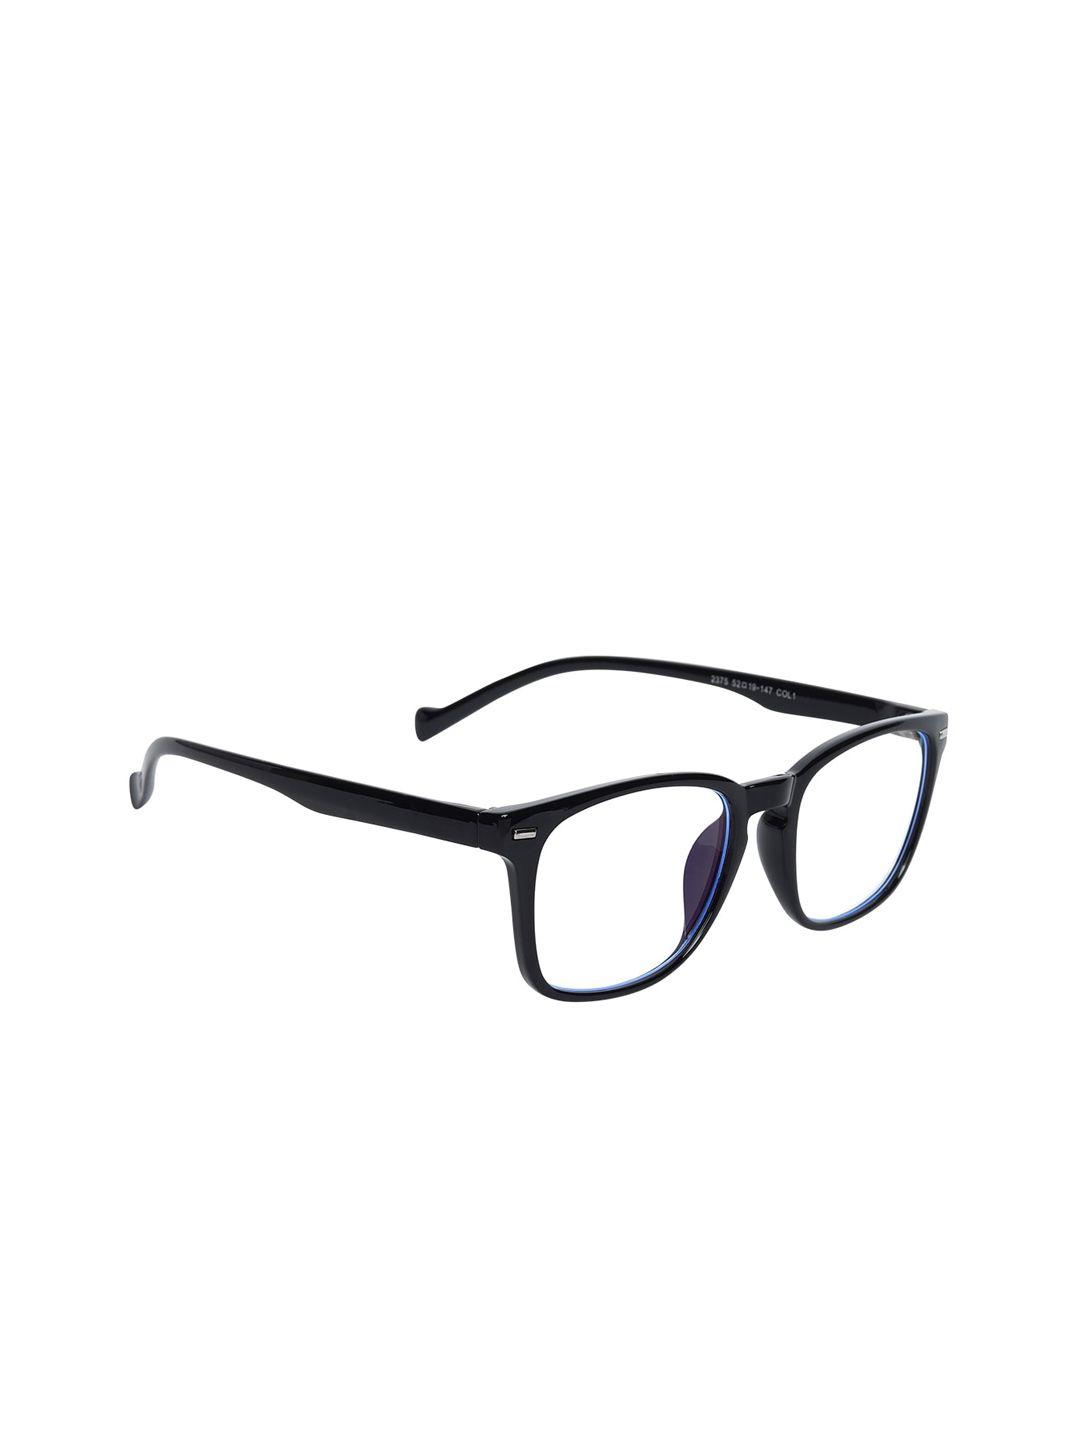 peter jones eyewear unisex black solid full-rim square frames-ag2375b